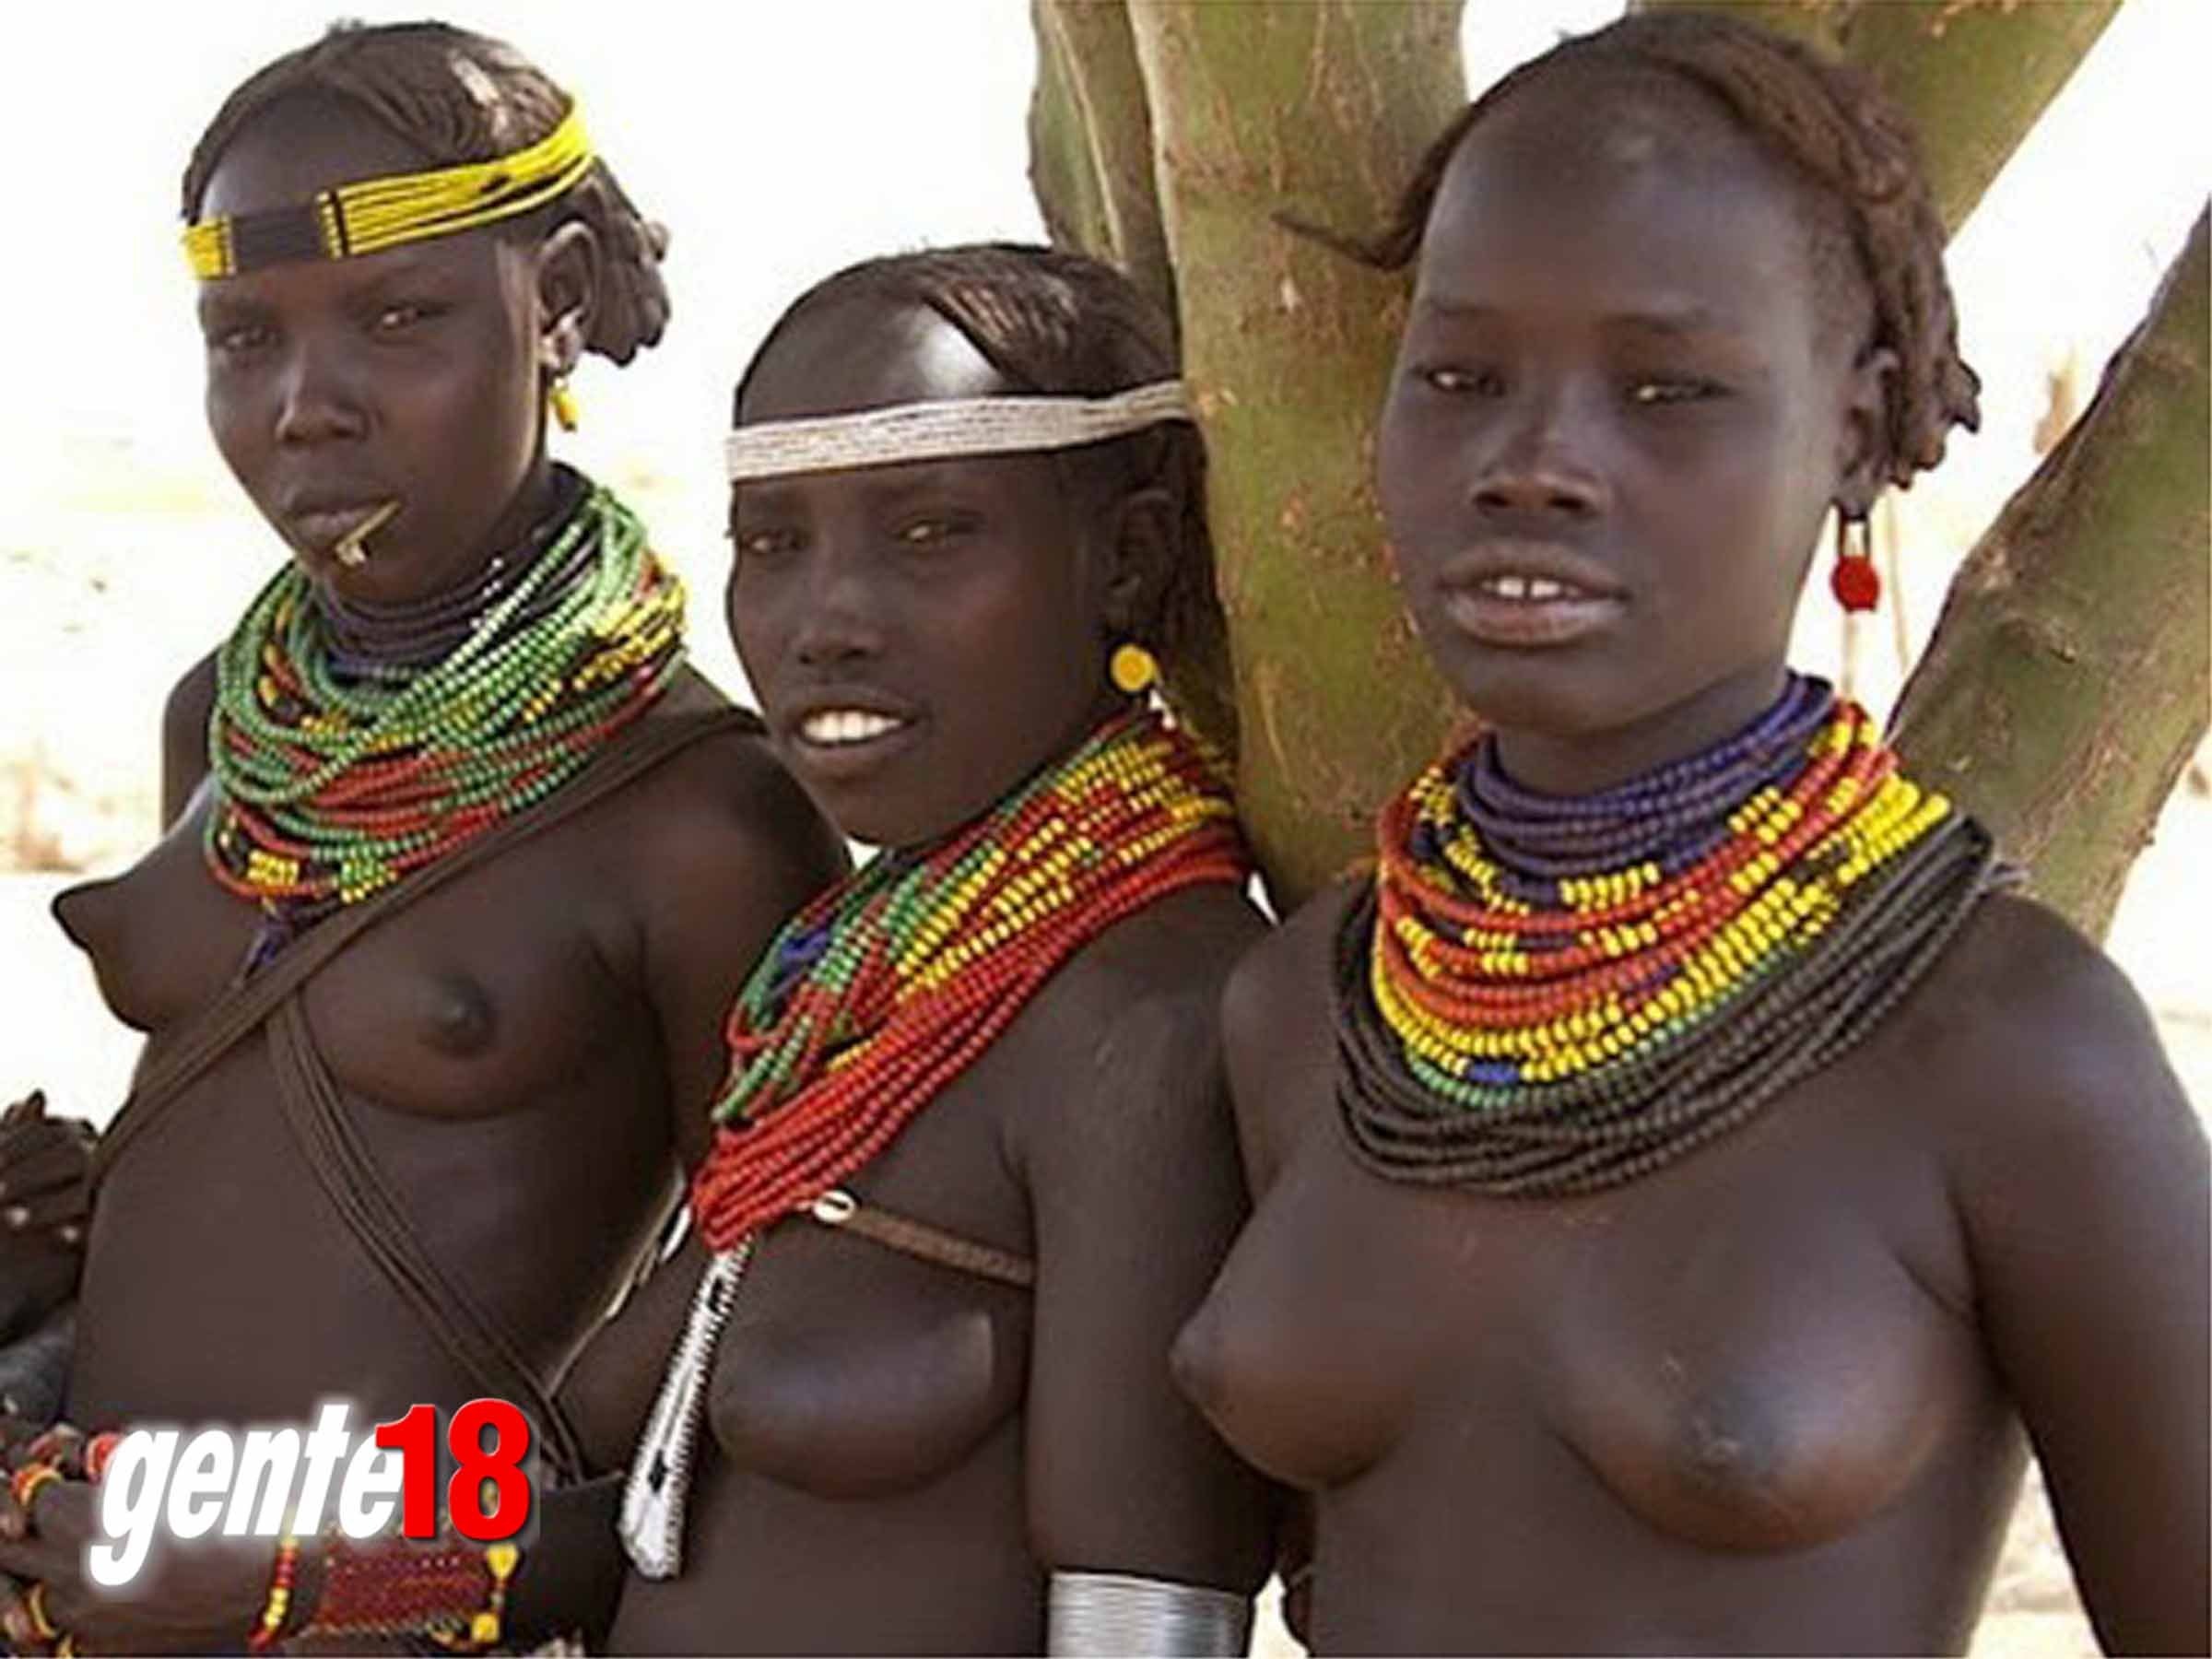 голые африканцы подростки фото 1